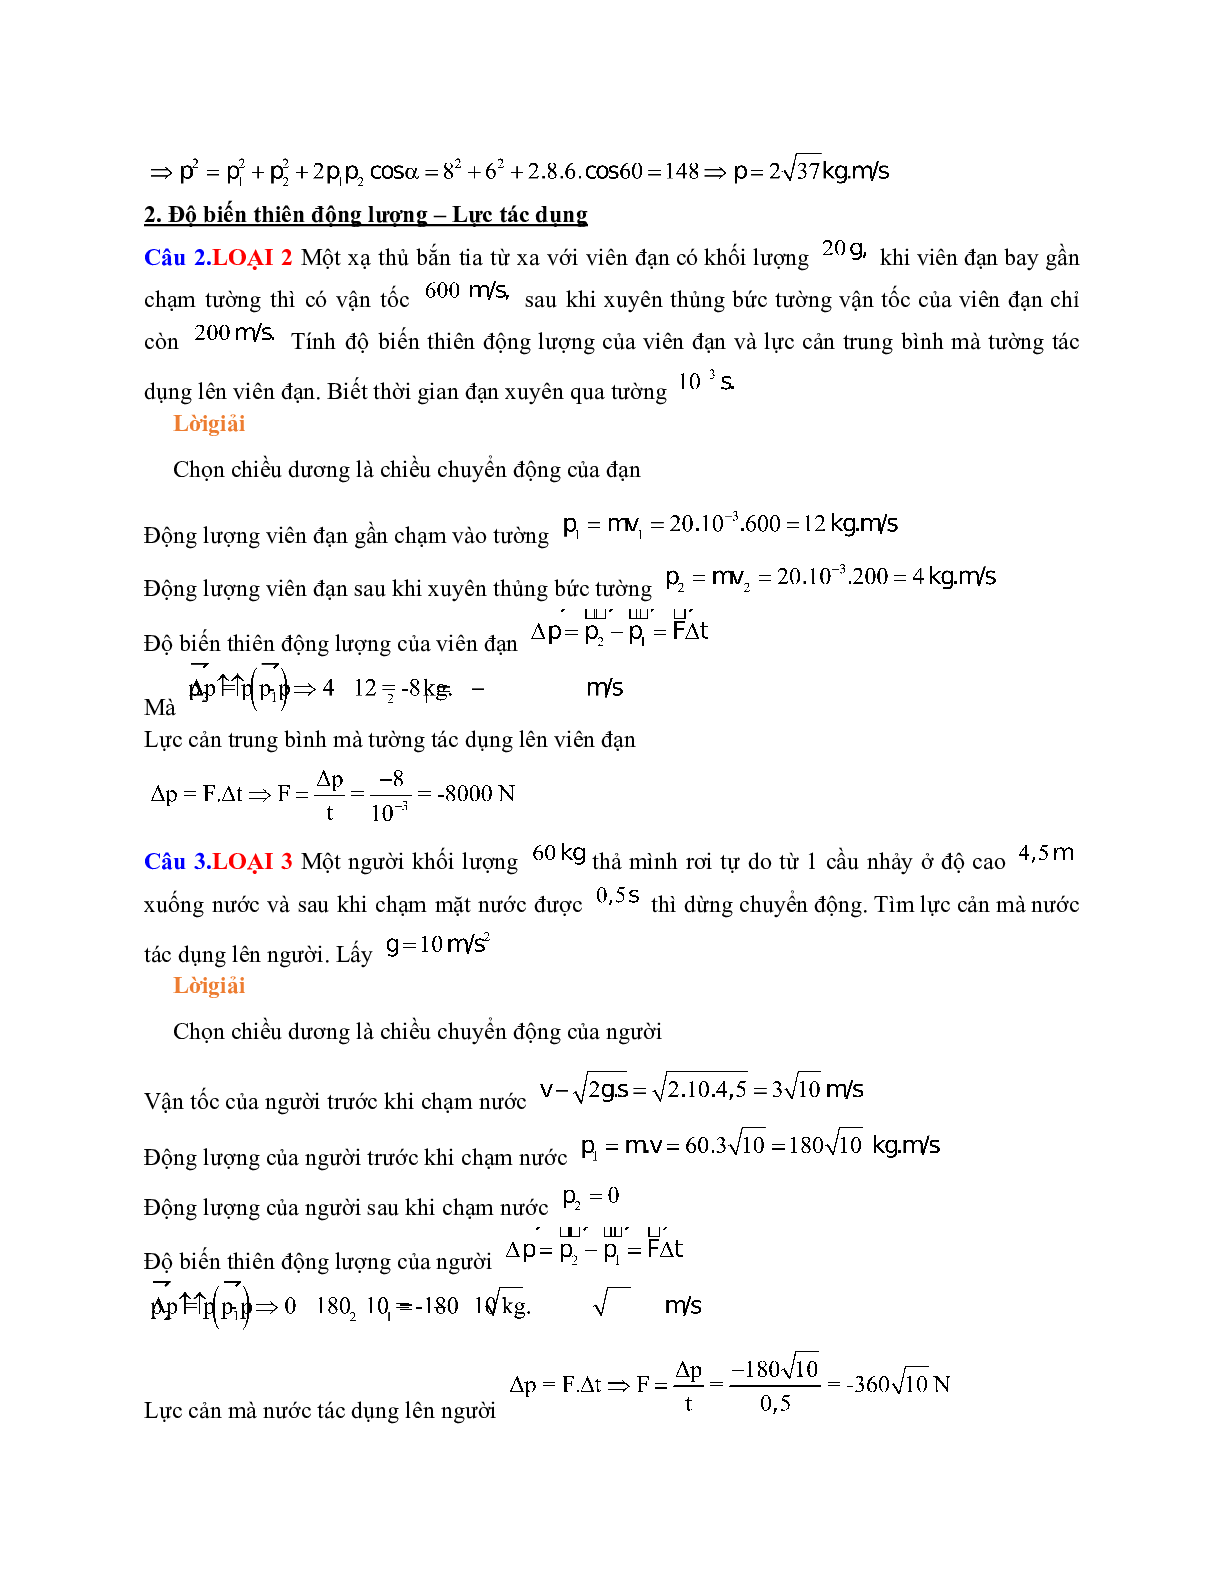 Chuyên đề: Các định luật bảo toàn môn Vật lý lớp 10 (trang 3)